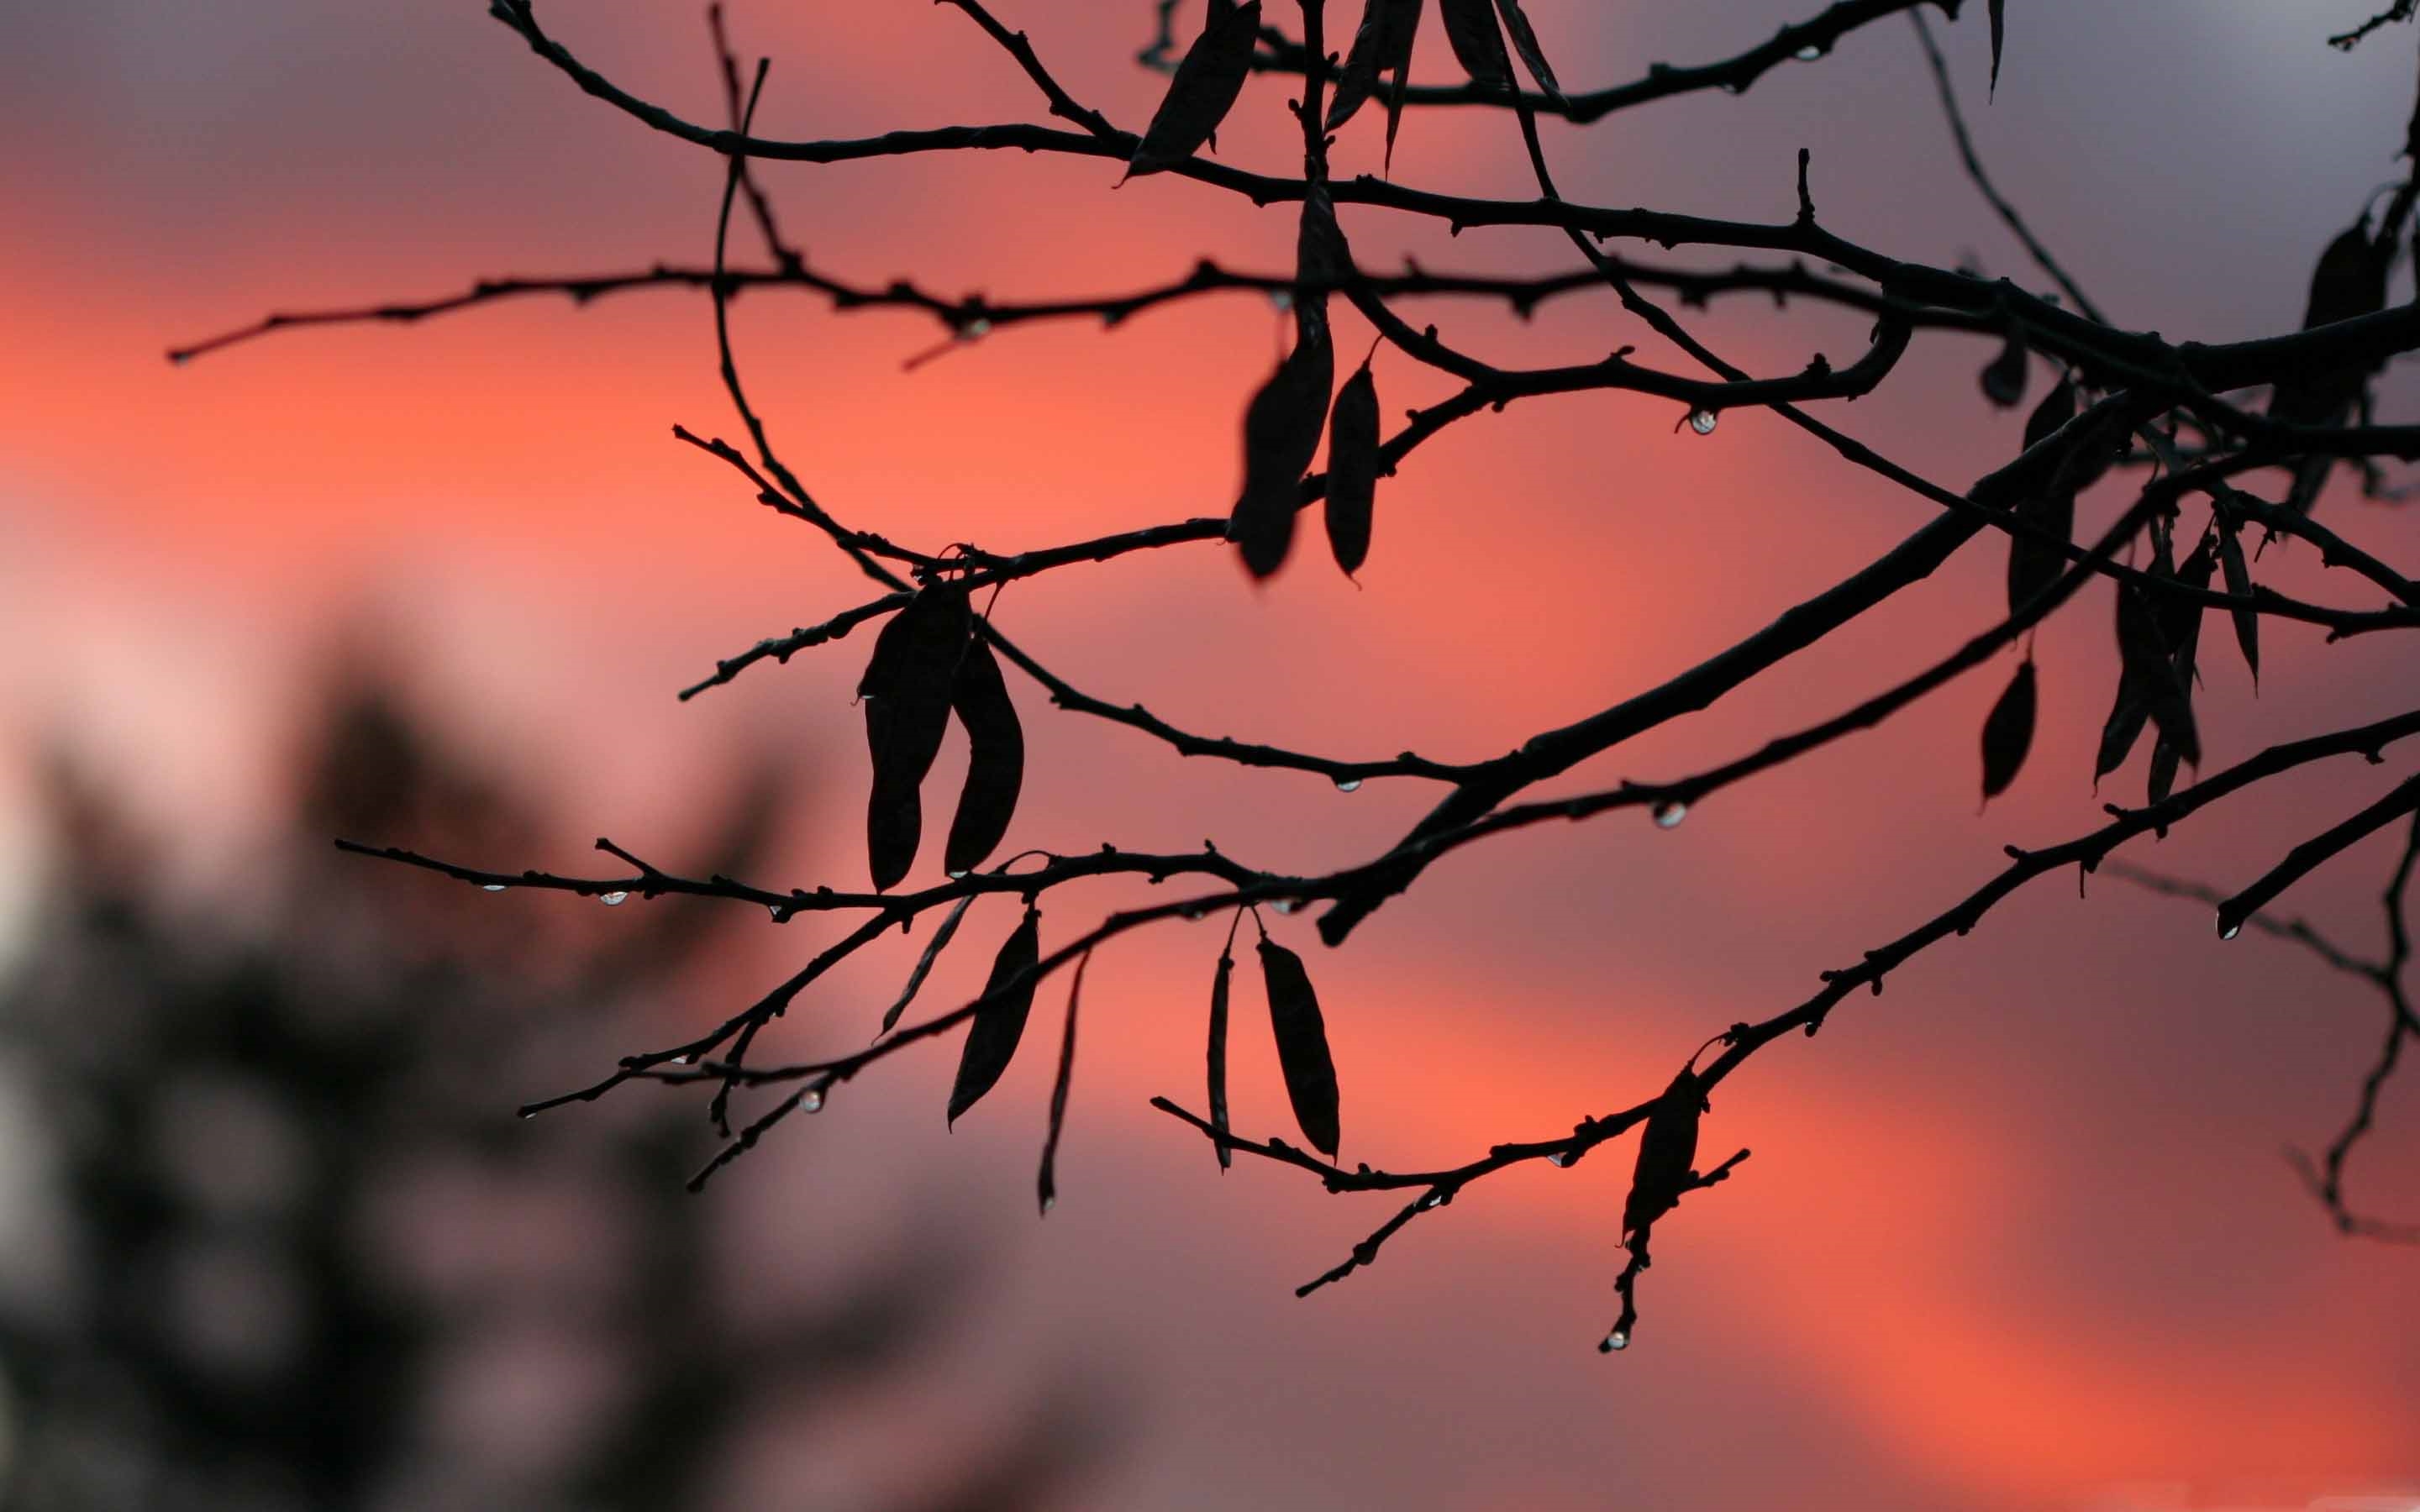 Червонное дерево заката сквозь гущу ветвей бросало